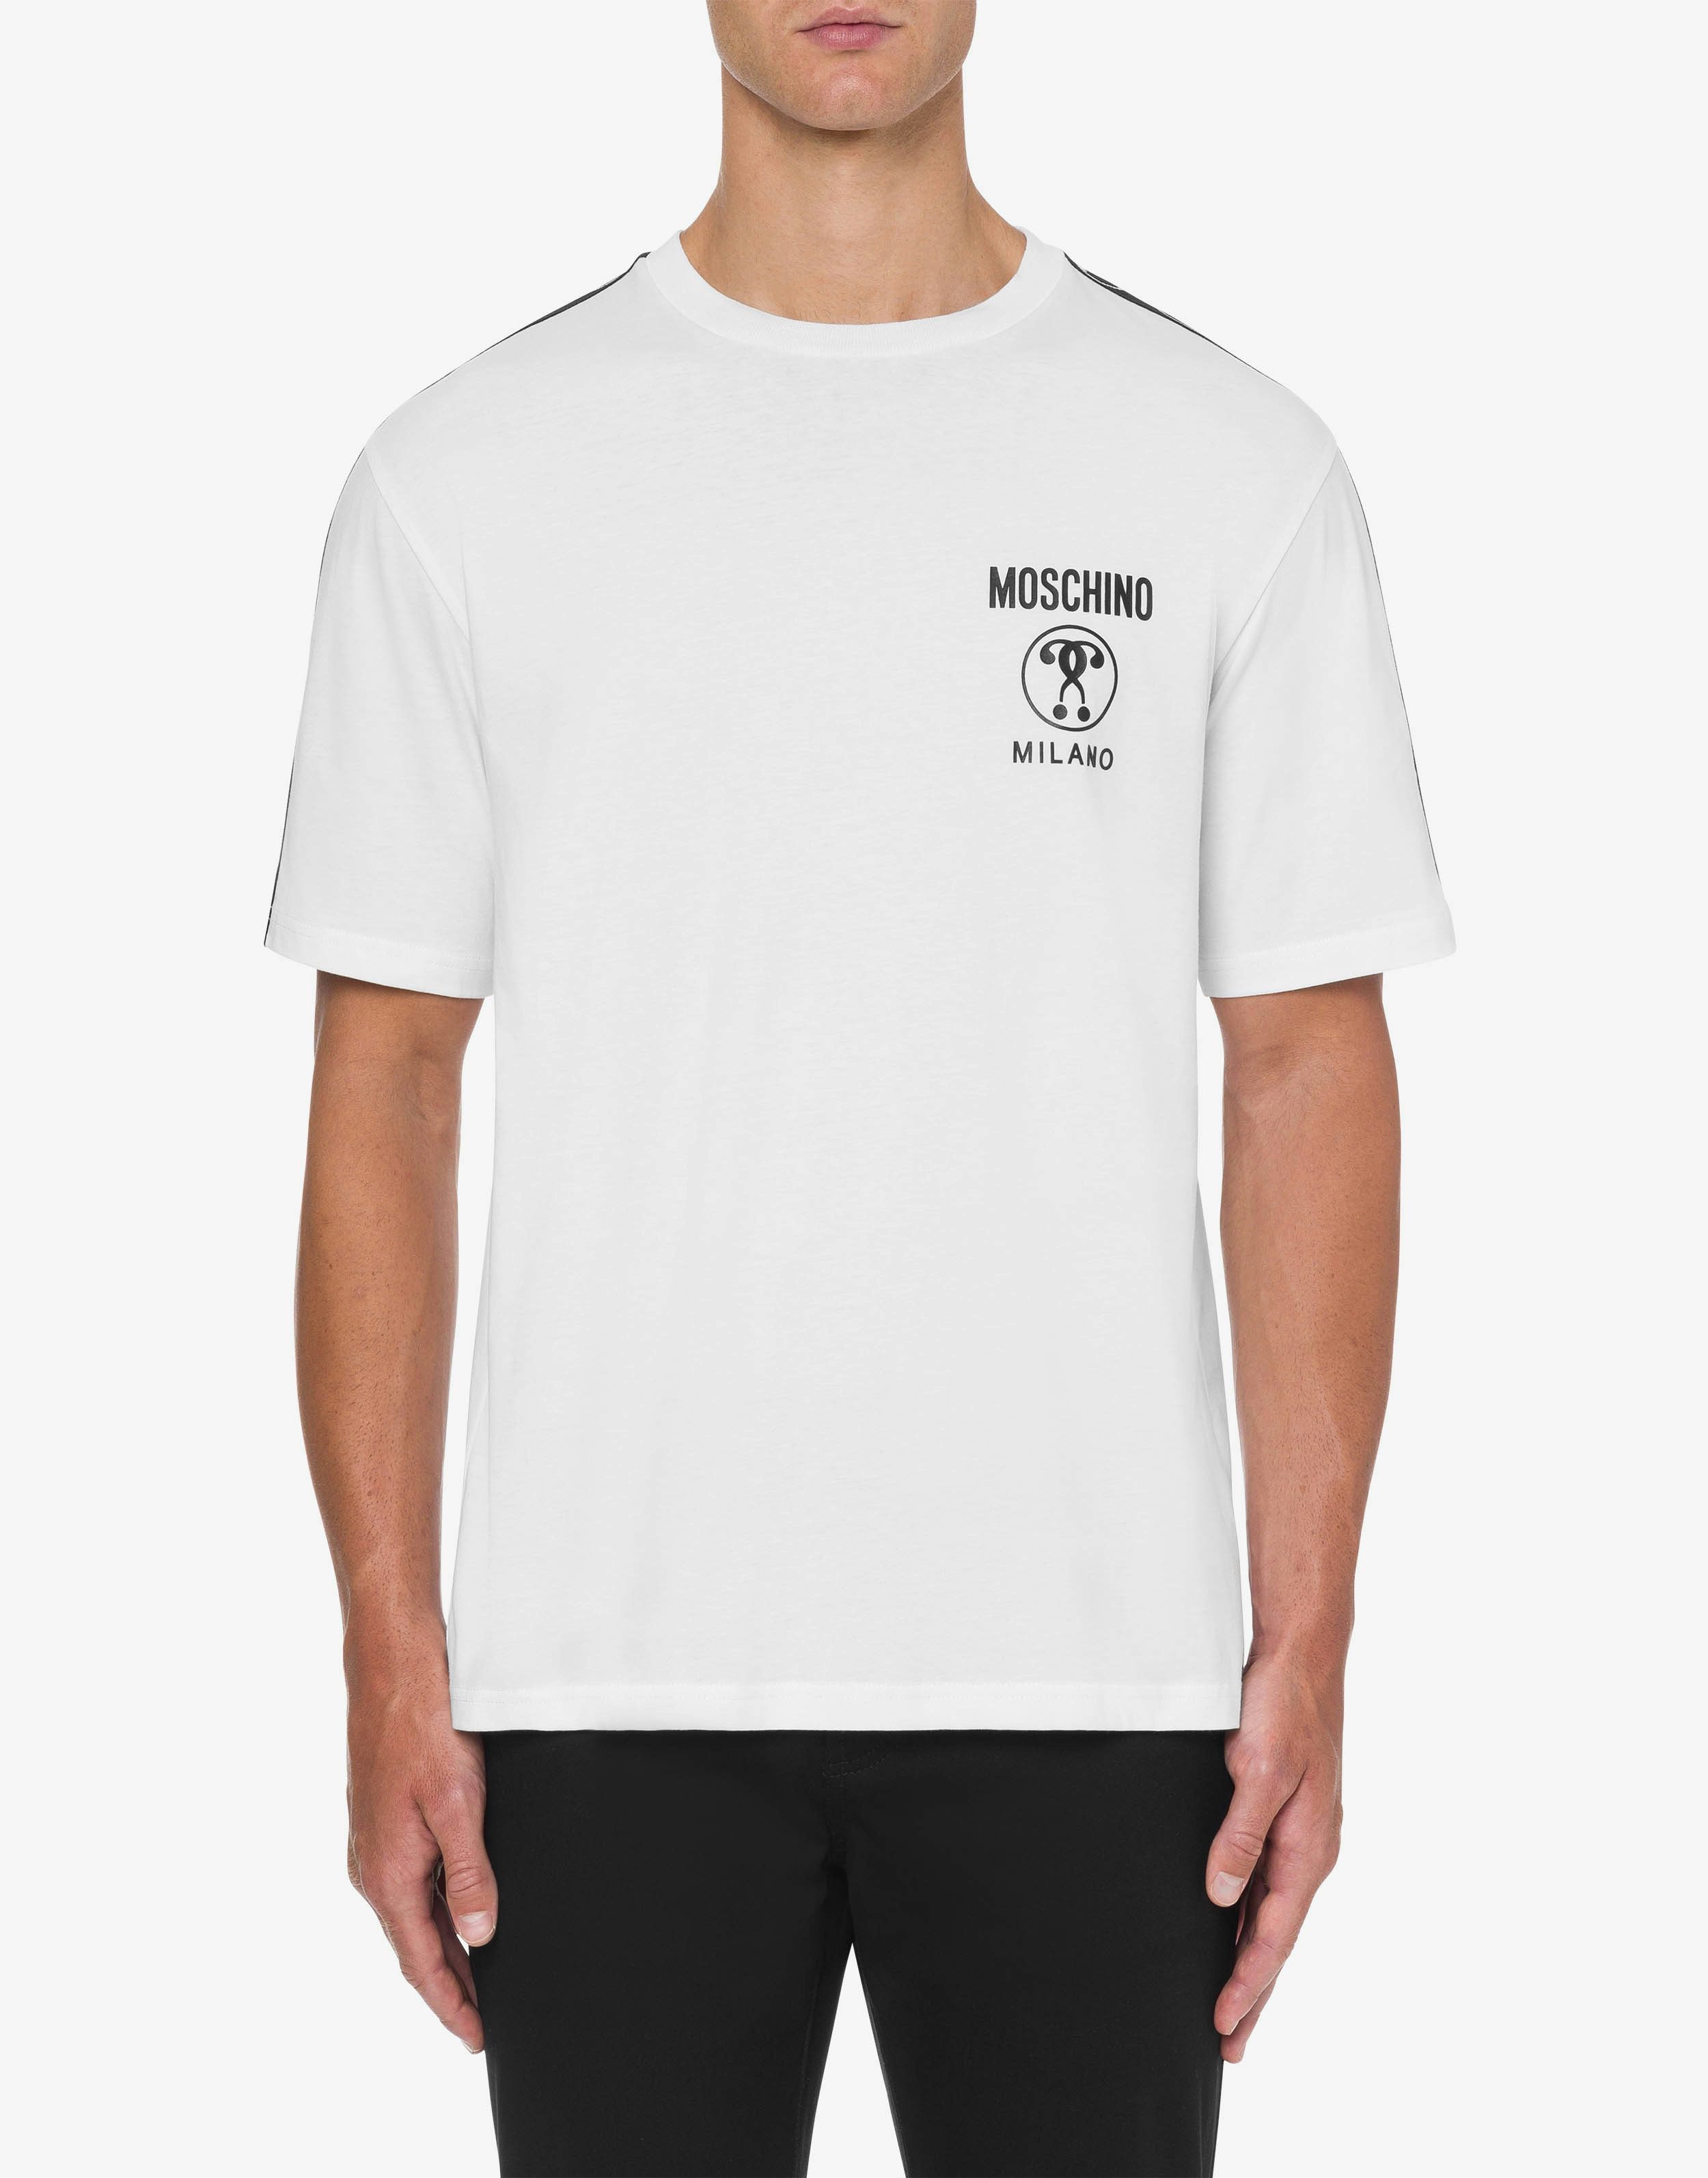 Organisches T-Shirt aus Baumwolle mit zwei Fragezeichen 0